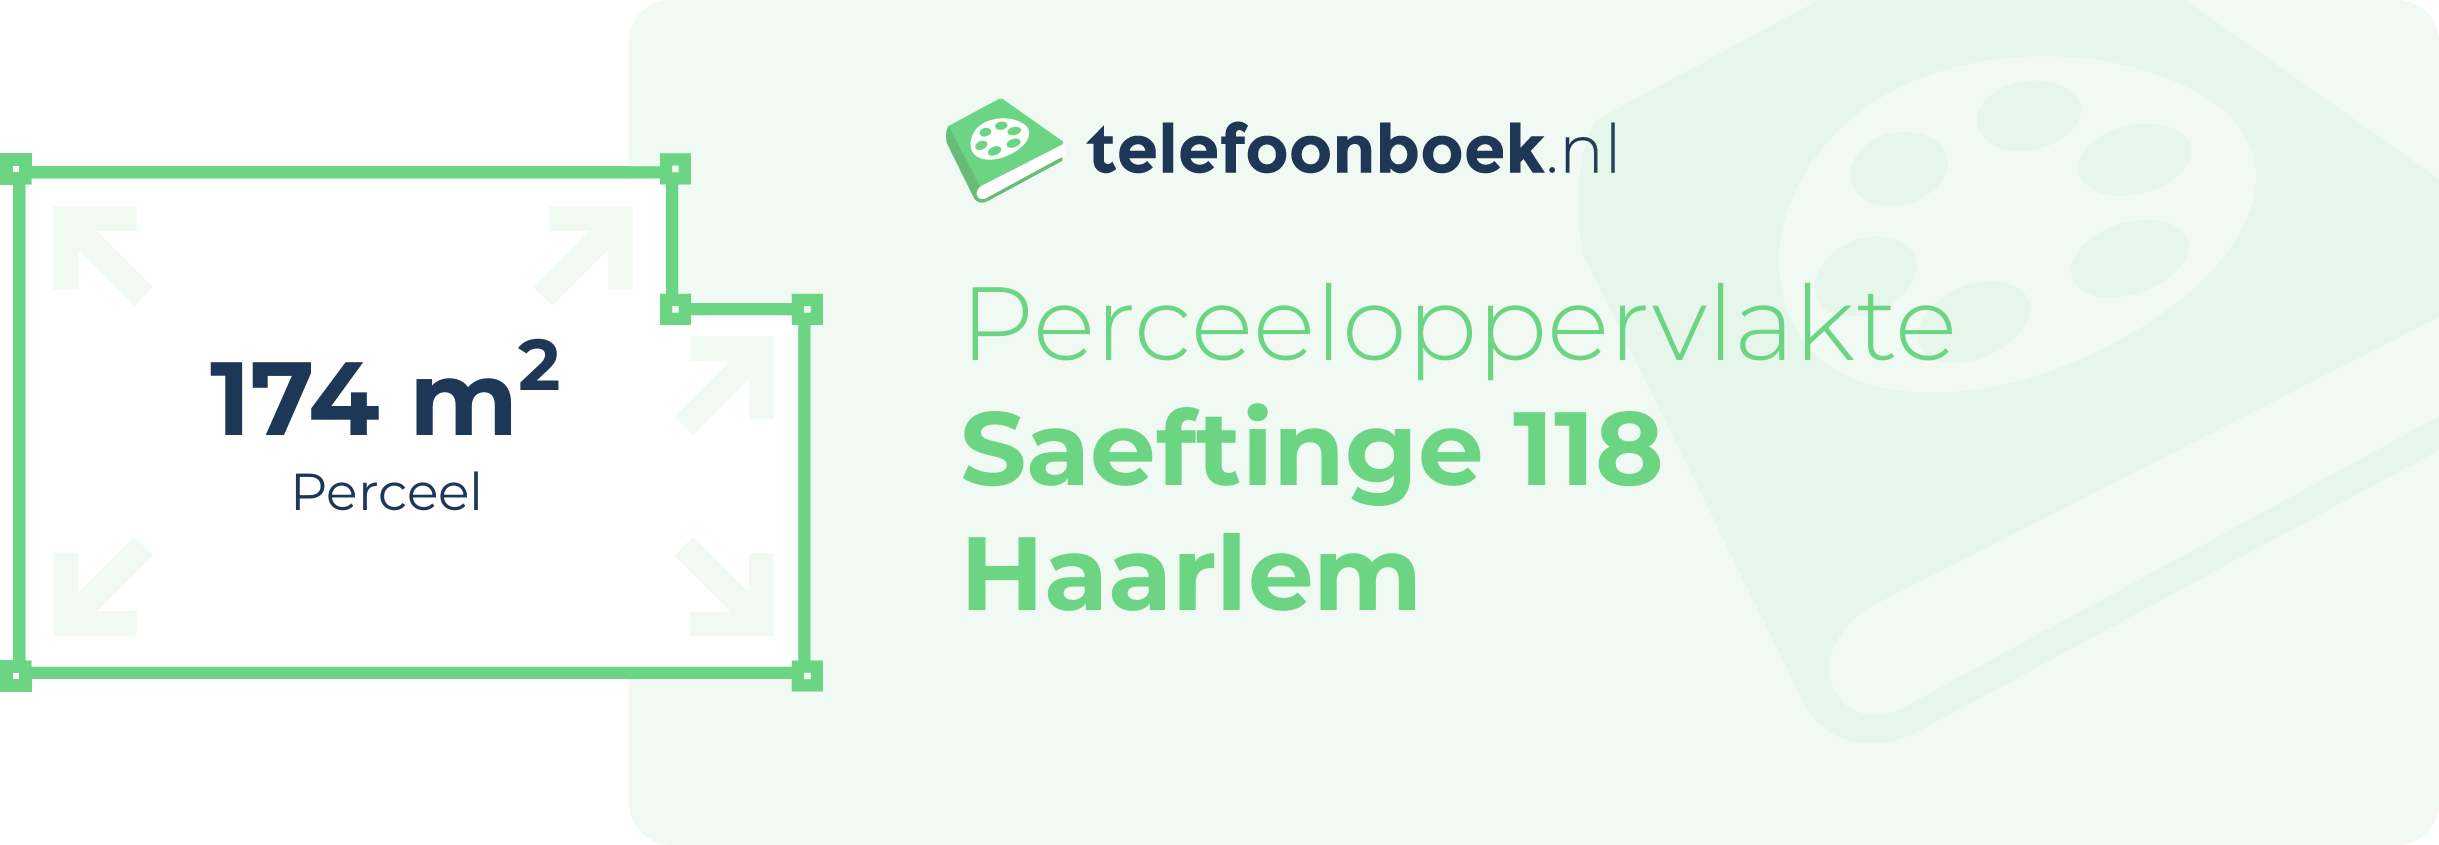 Perceeloppervlakte Saeftinge 118 Haarlem